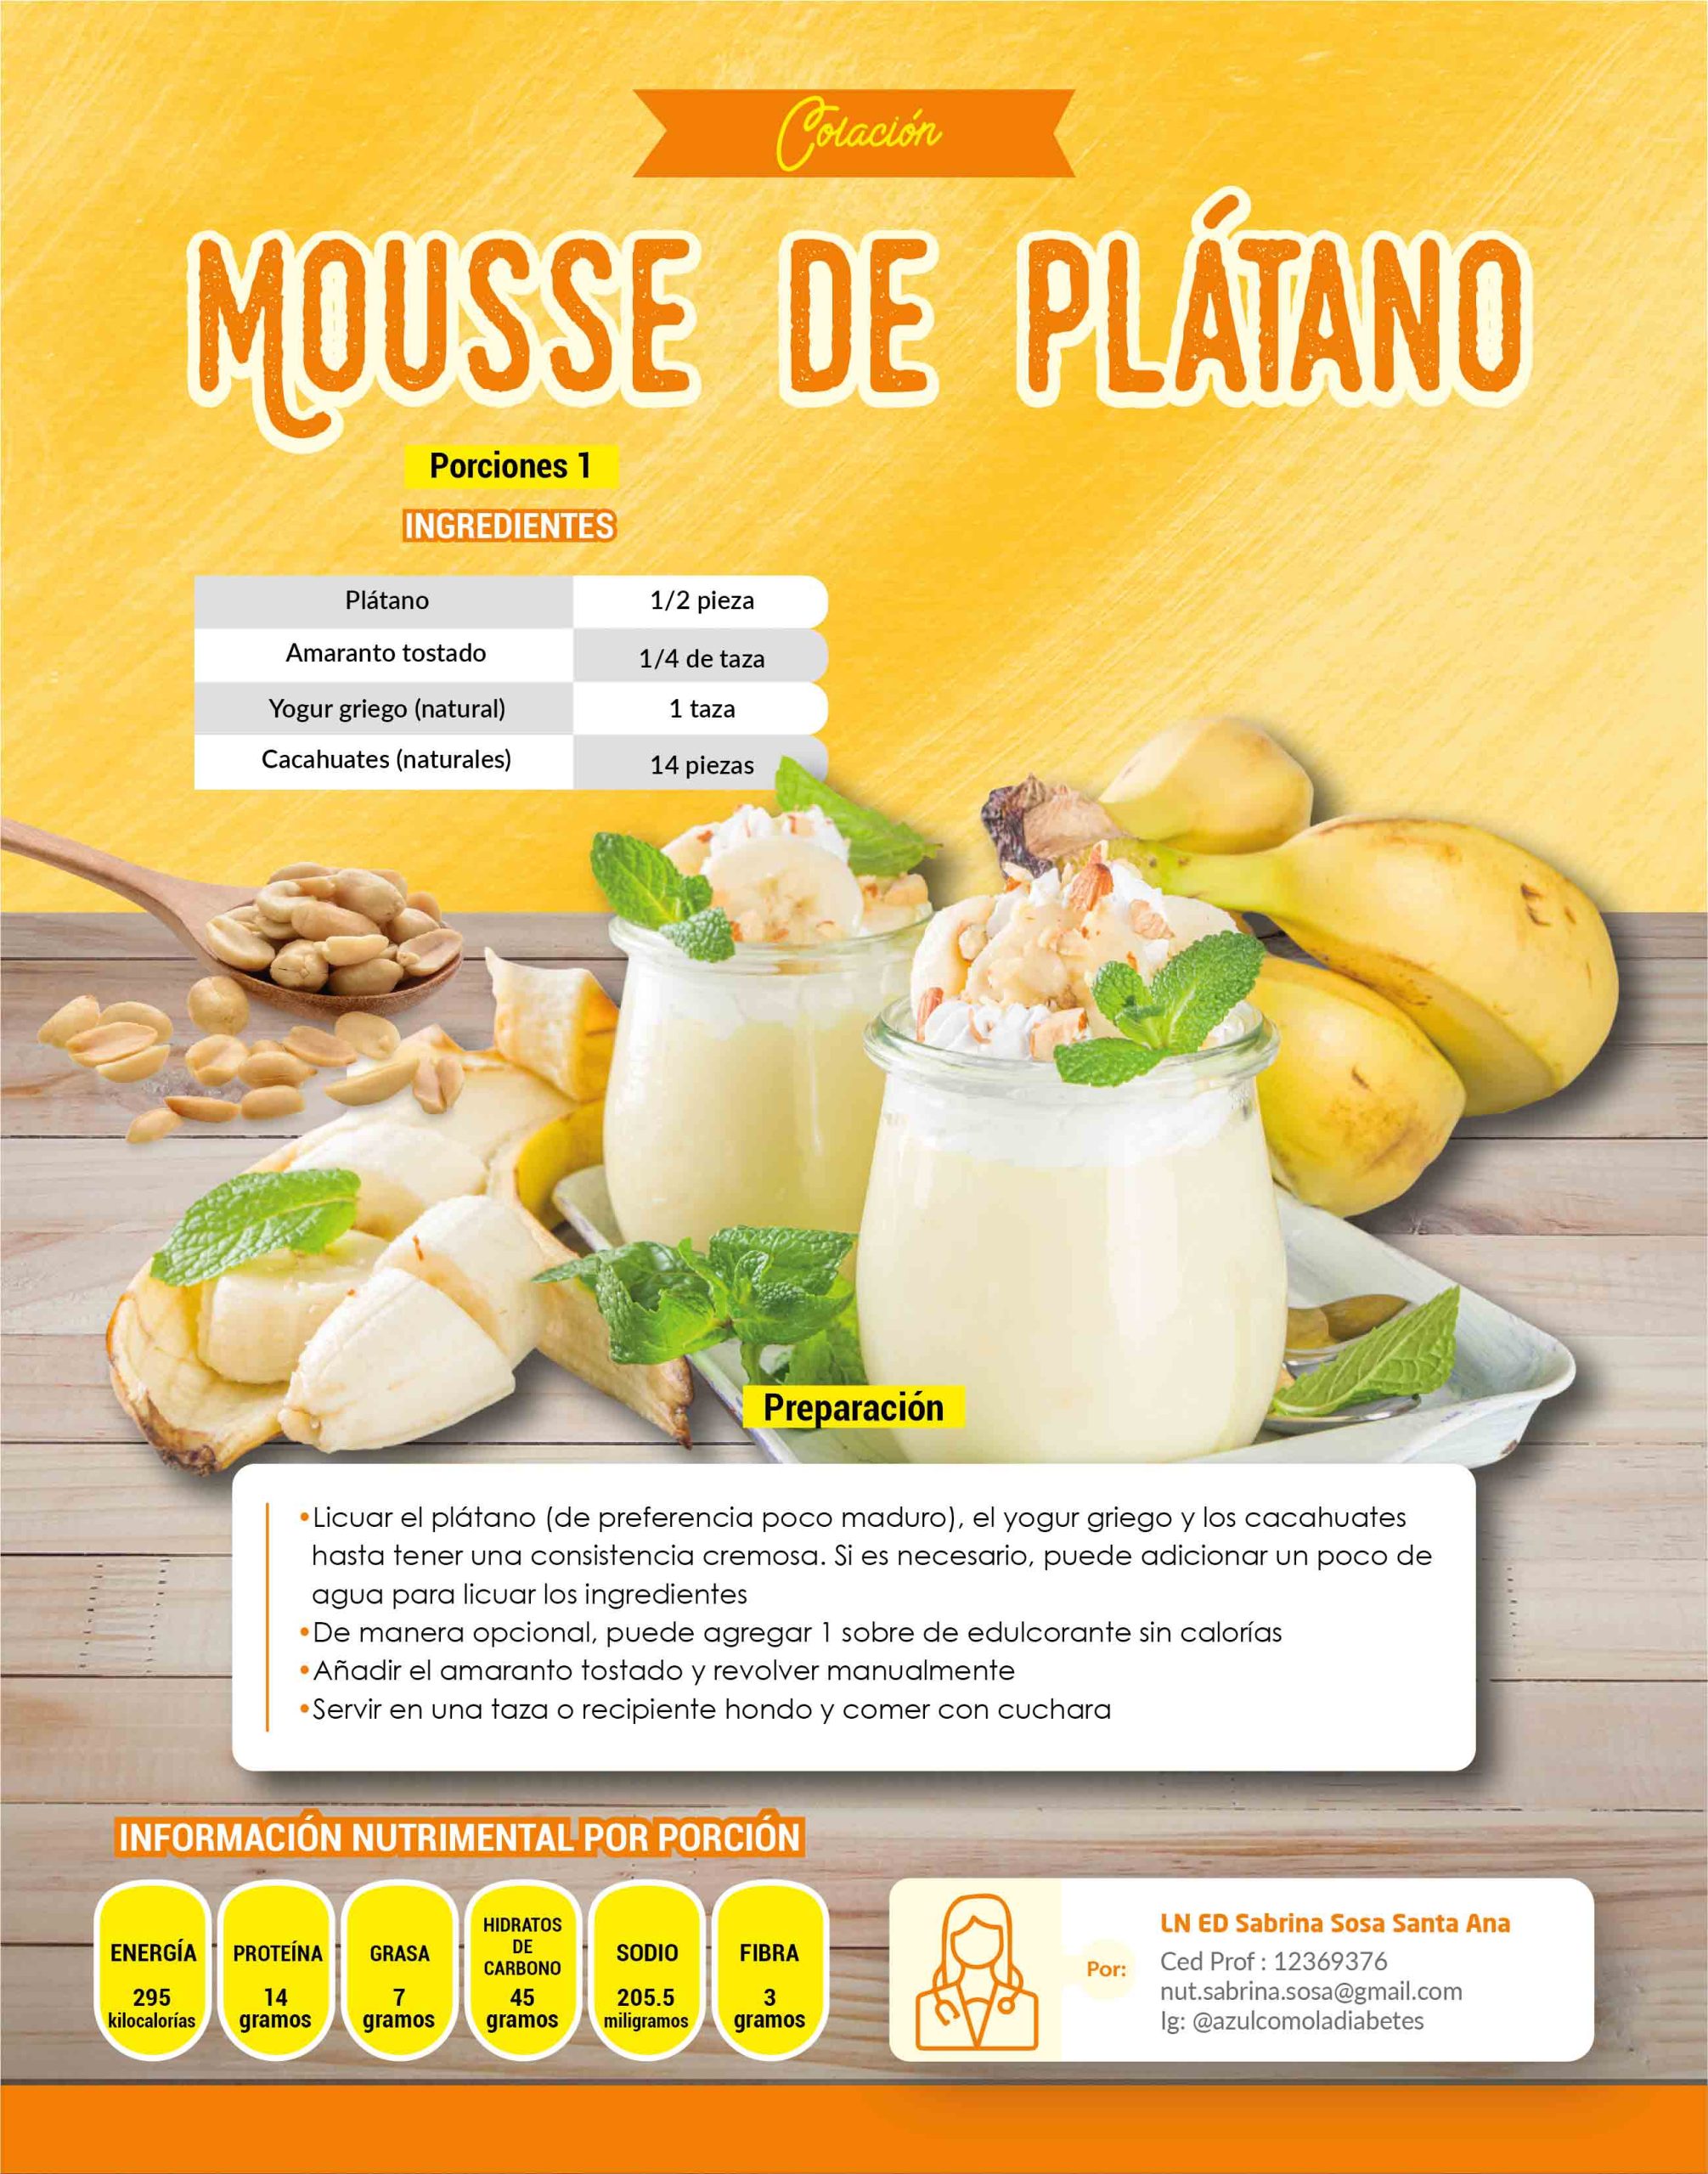 Mousse de plátano - Revista Diabetes Hoy